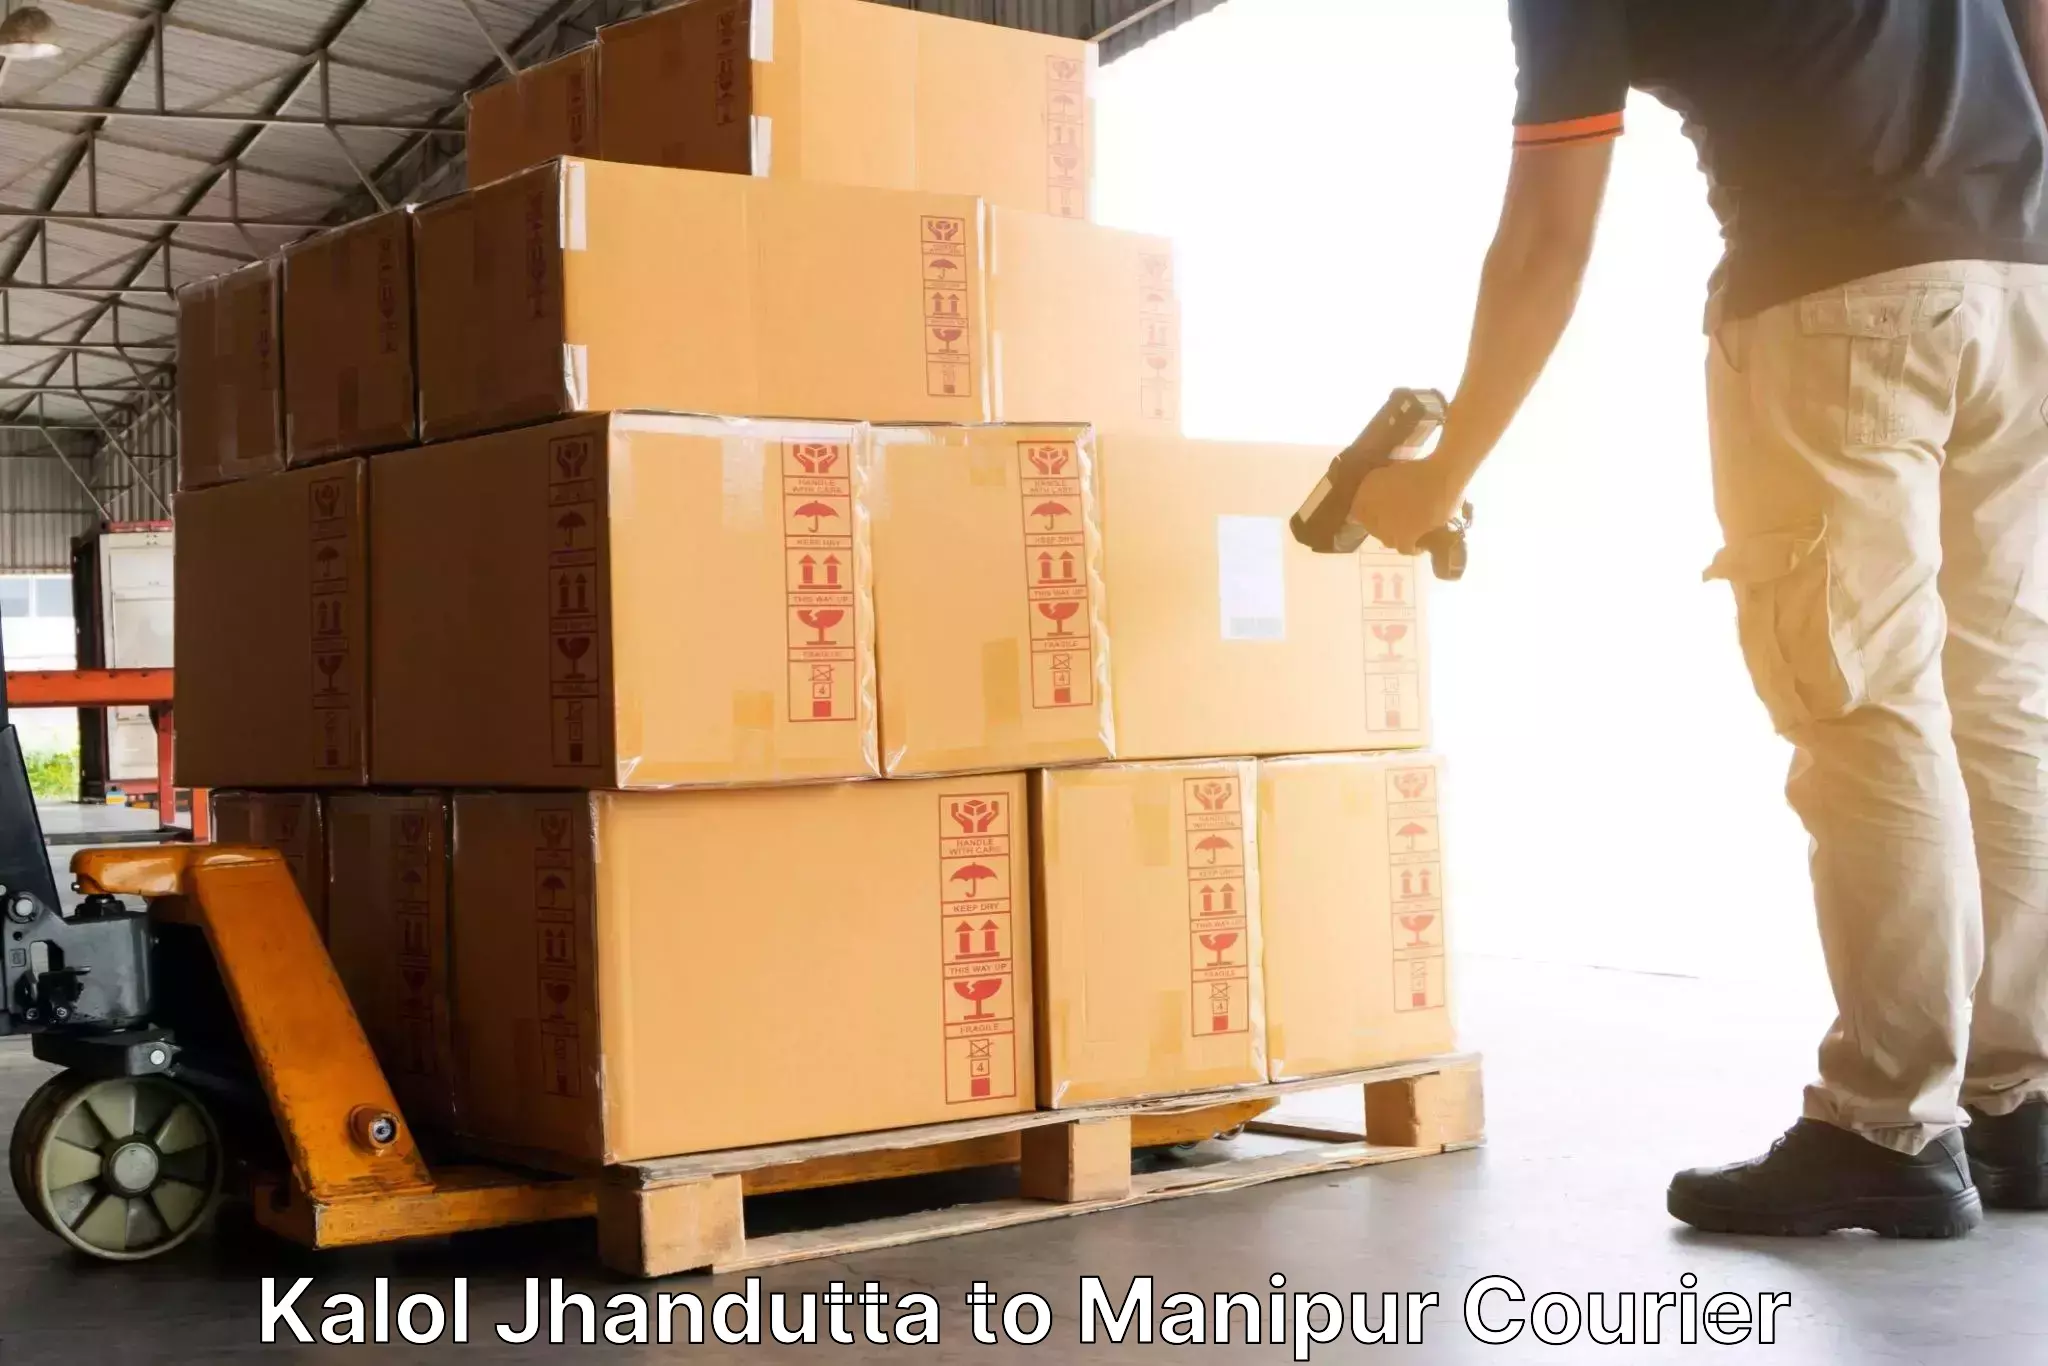 Efficient cargo services Kalol Jhandutta to Chandel